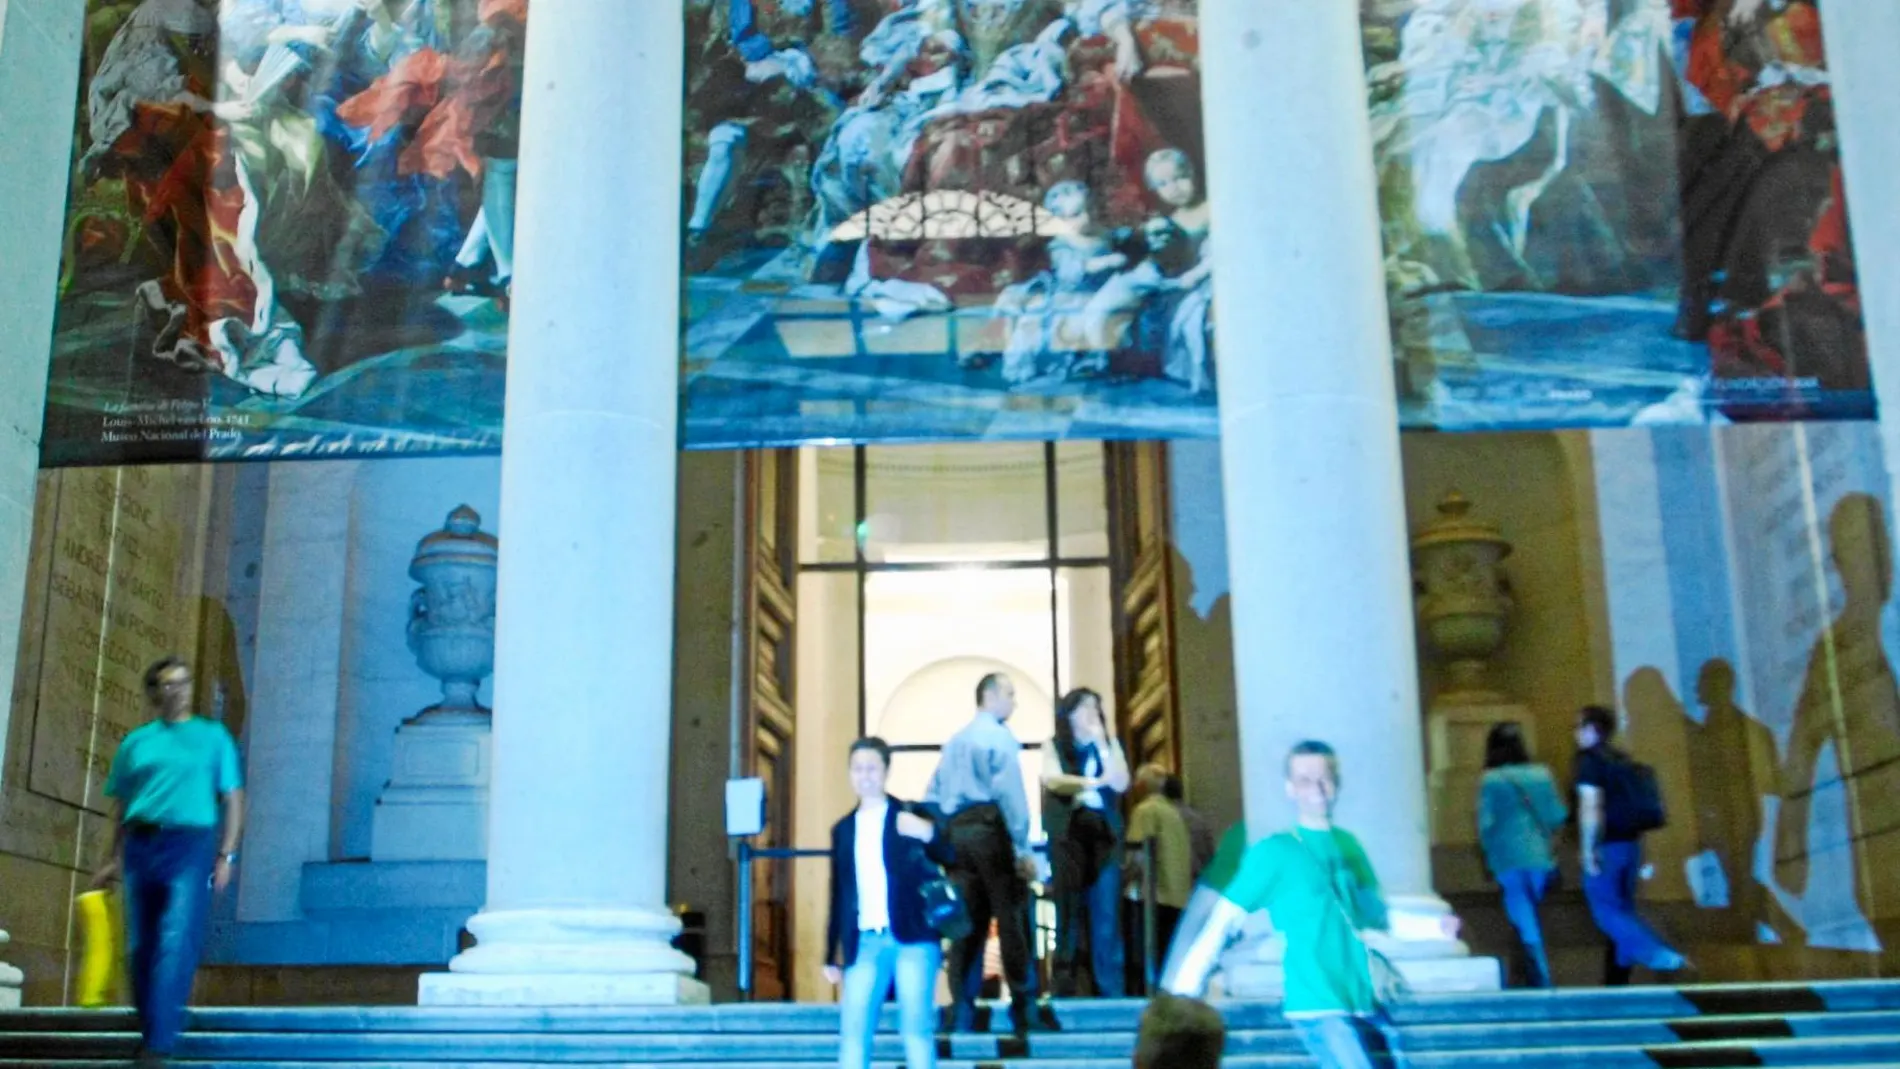 El Museo del Prado permitirá el acceso gratuito en horario nocturno a algunas salas de la pinacoteca que contienen obras maestras